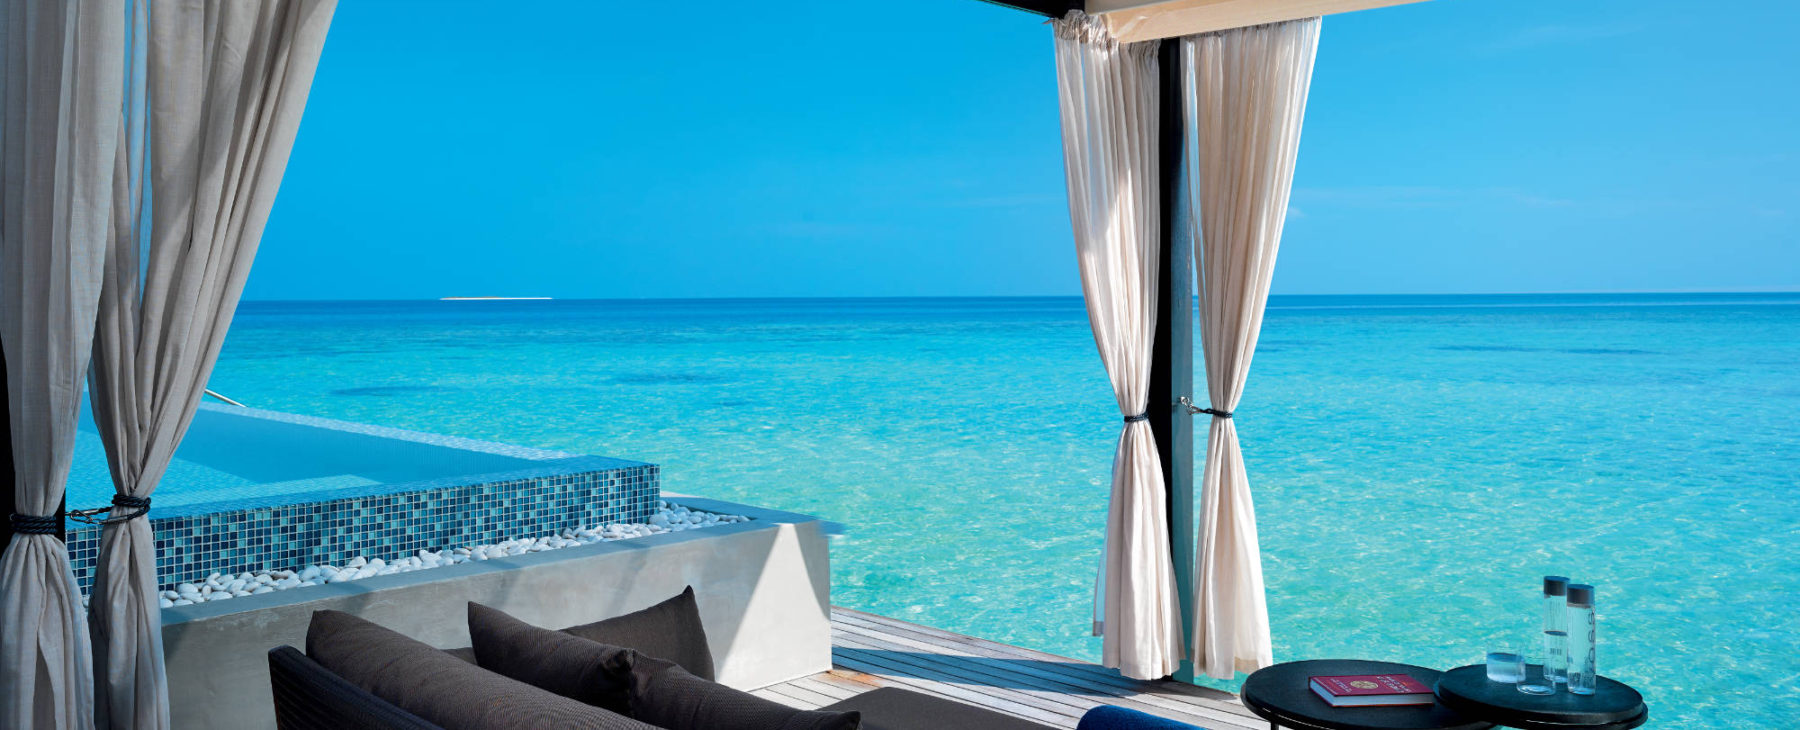 Luxusreisen Malediven LUXUSHOTEL Velaa Private Island Maledives